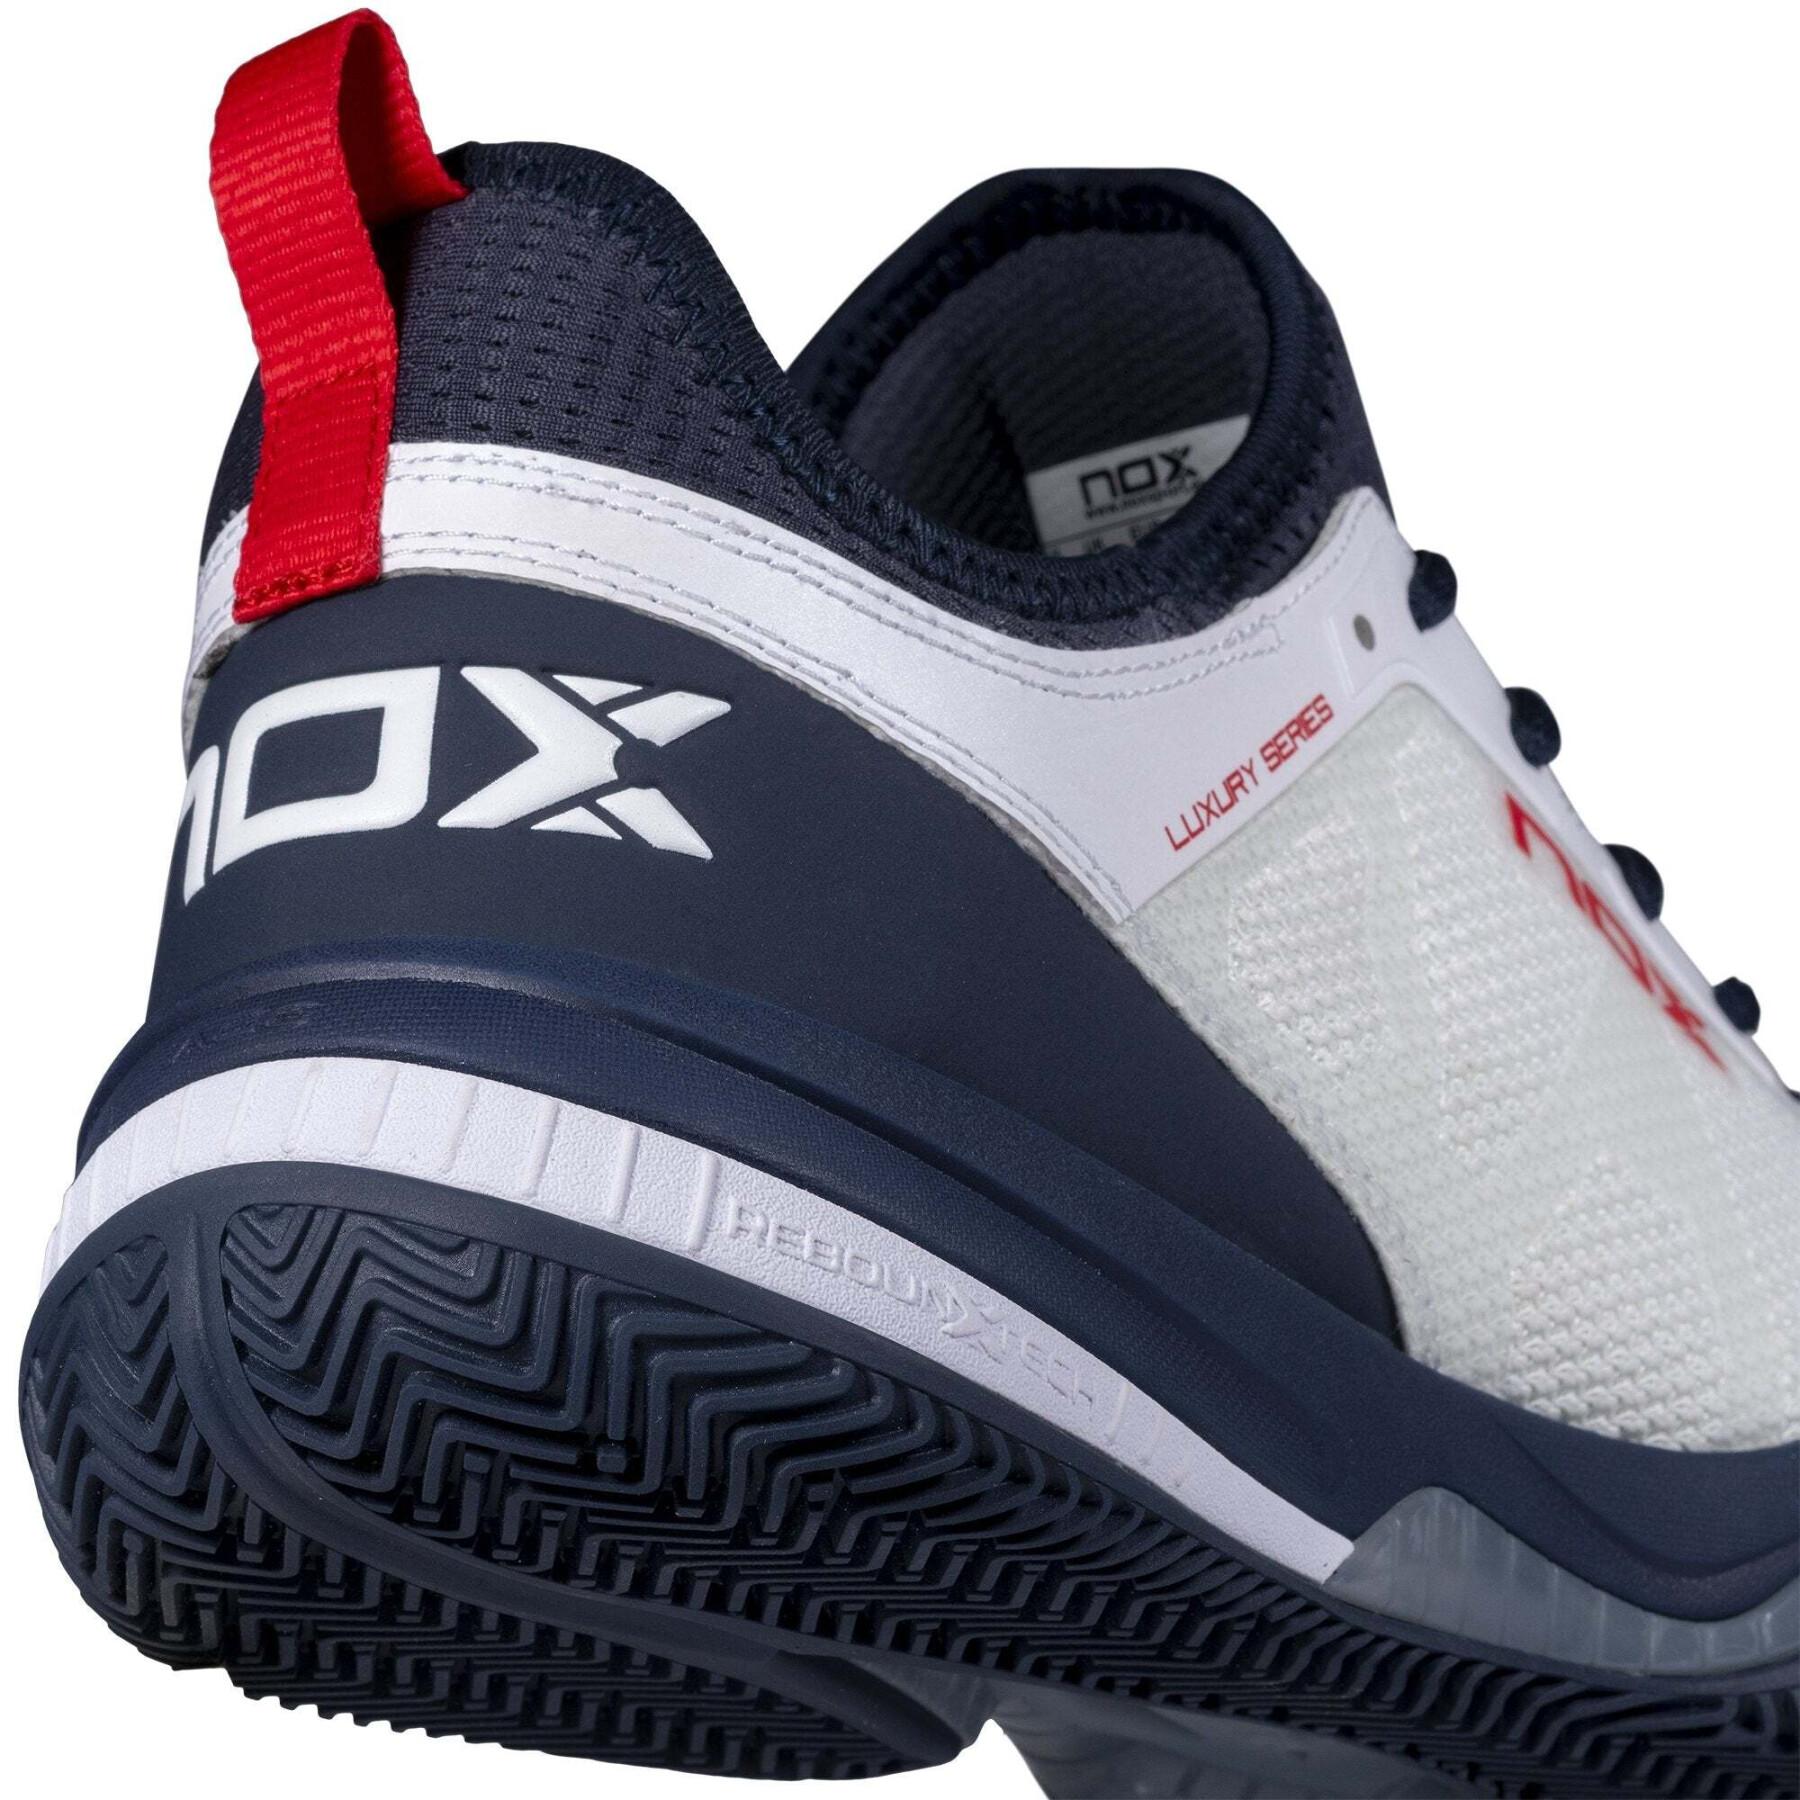 Zapatos de padel Nox Calzado Lux Nerbo